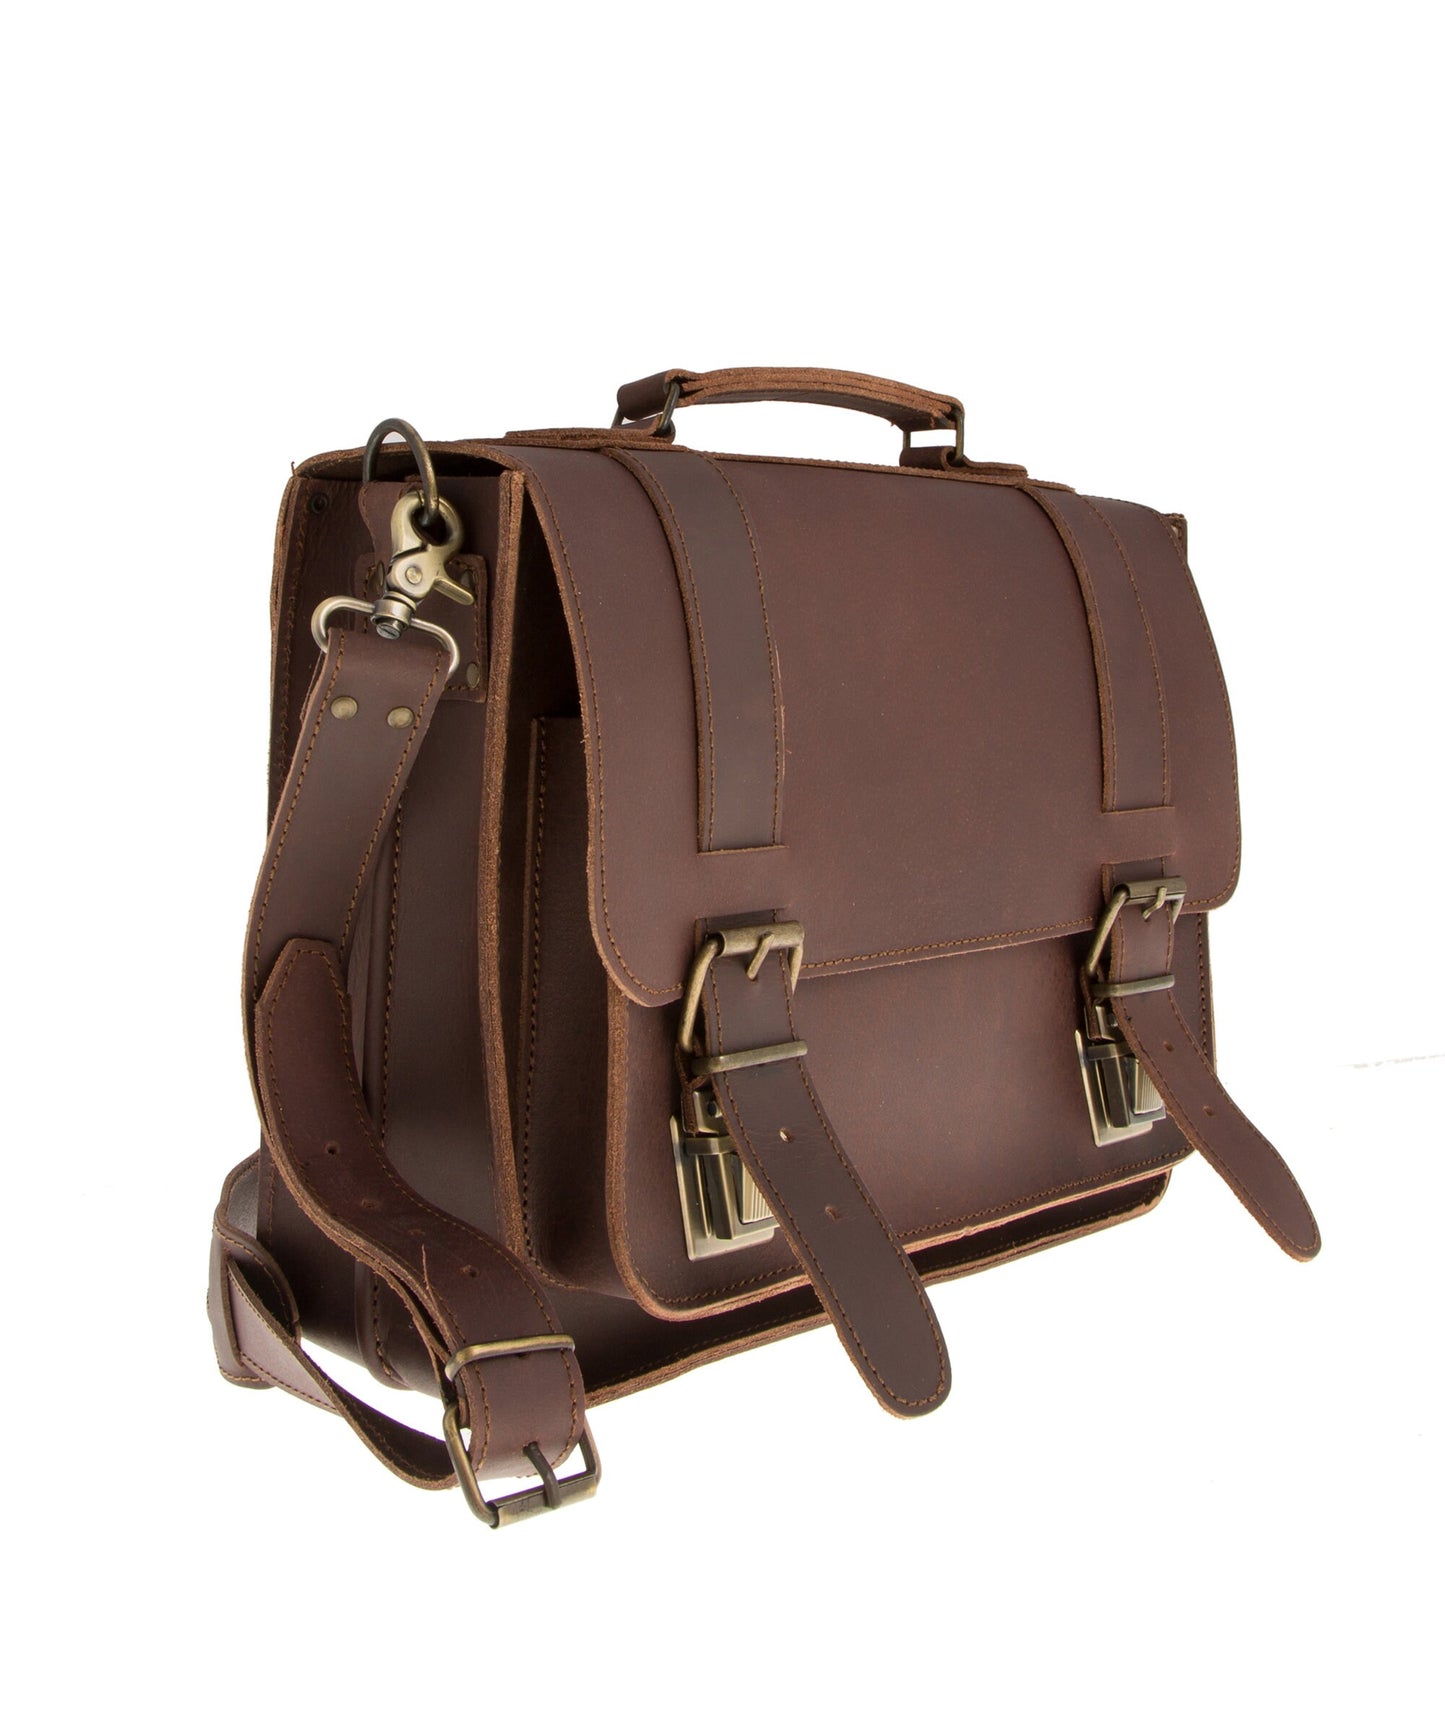 Full grain leather satchel for women, Genuine leather messenger bag, Leather briefcase, Leather laptop bag